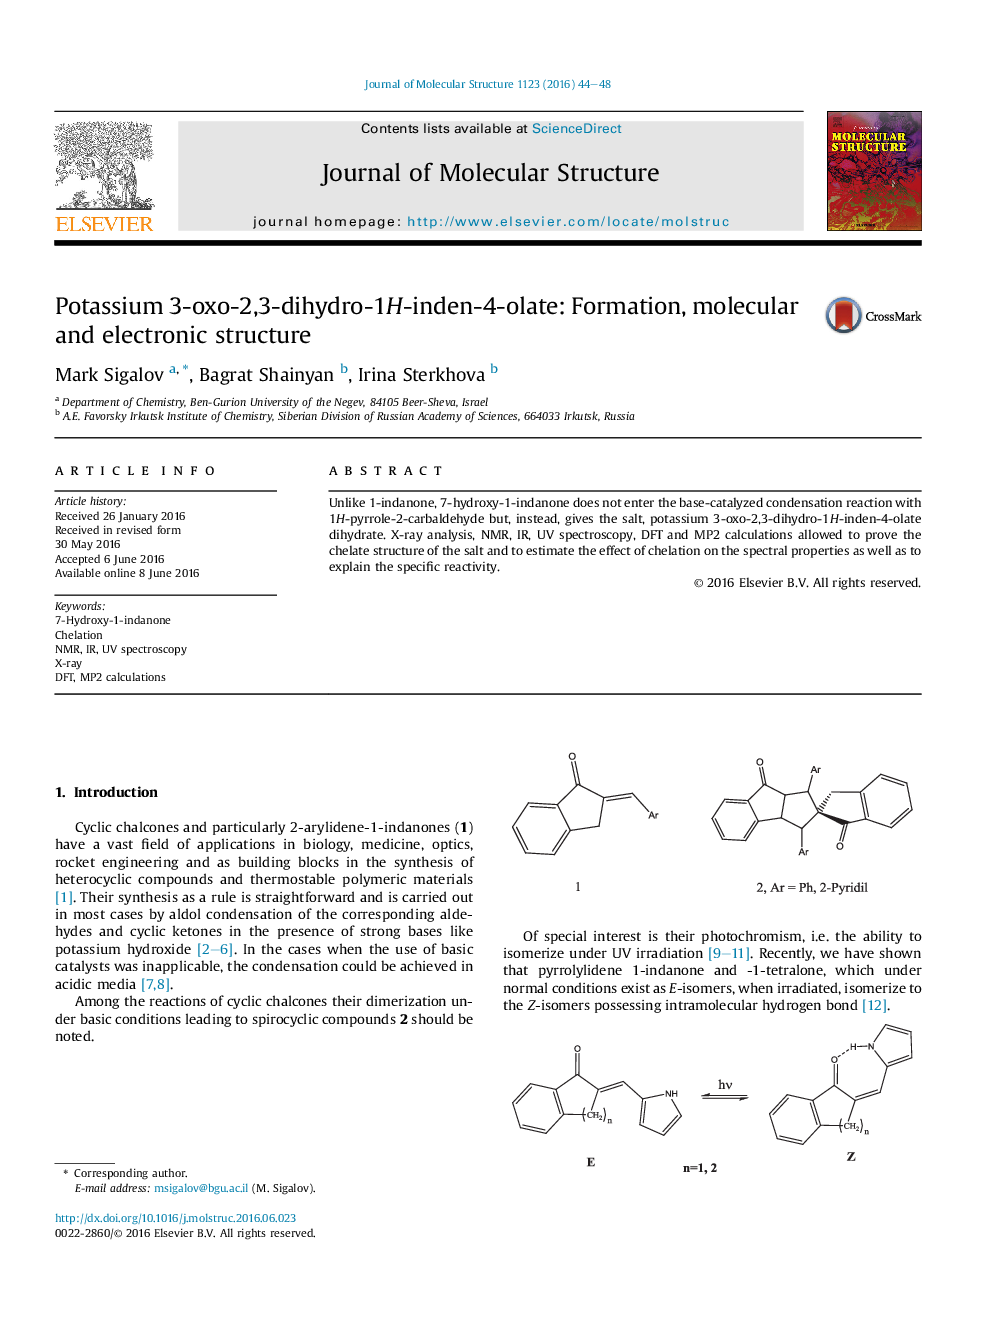 پتاسیم 3-اکسو-2،3-دی هیدرو-1H-اندن 4-الایت: تشکیل، ساختار مولکولی و الکترونیکی